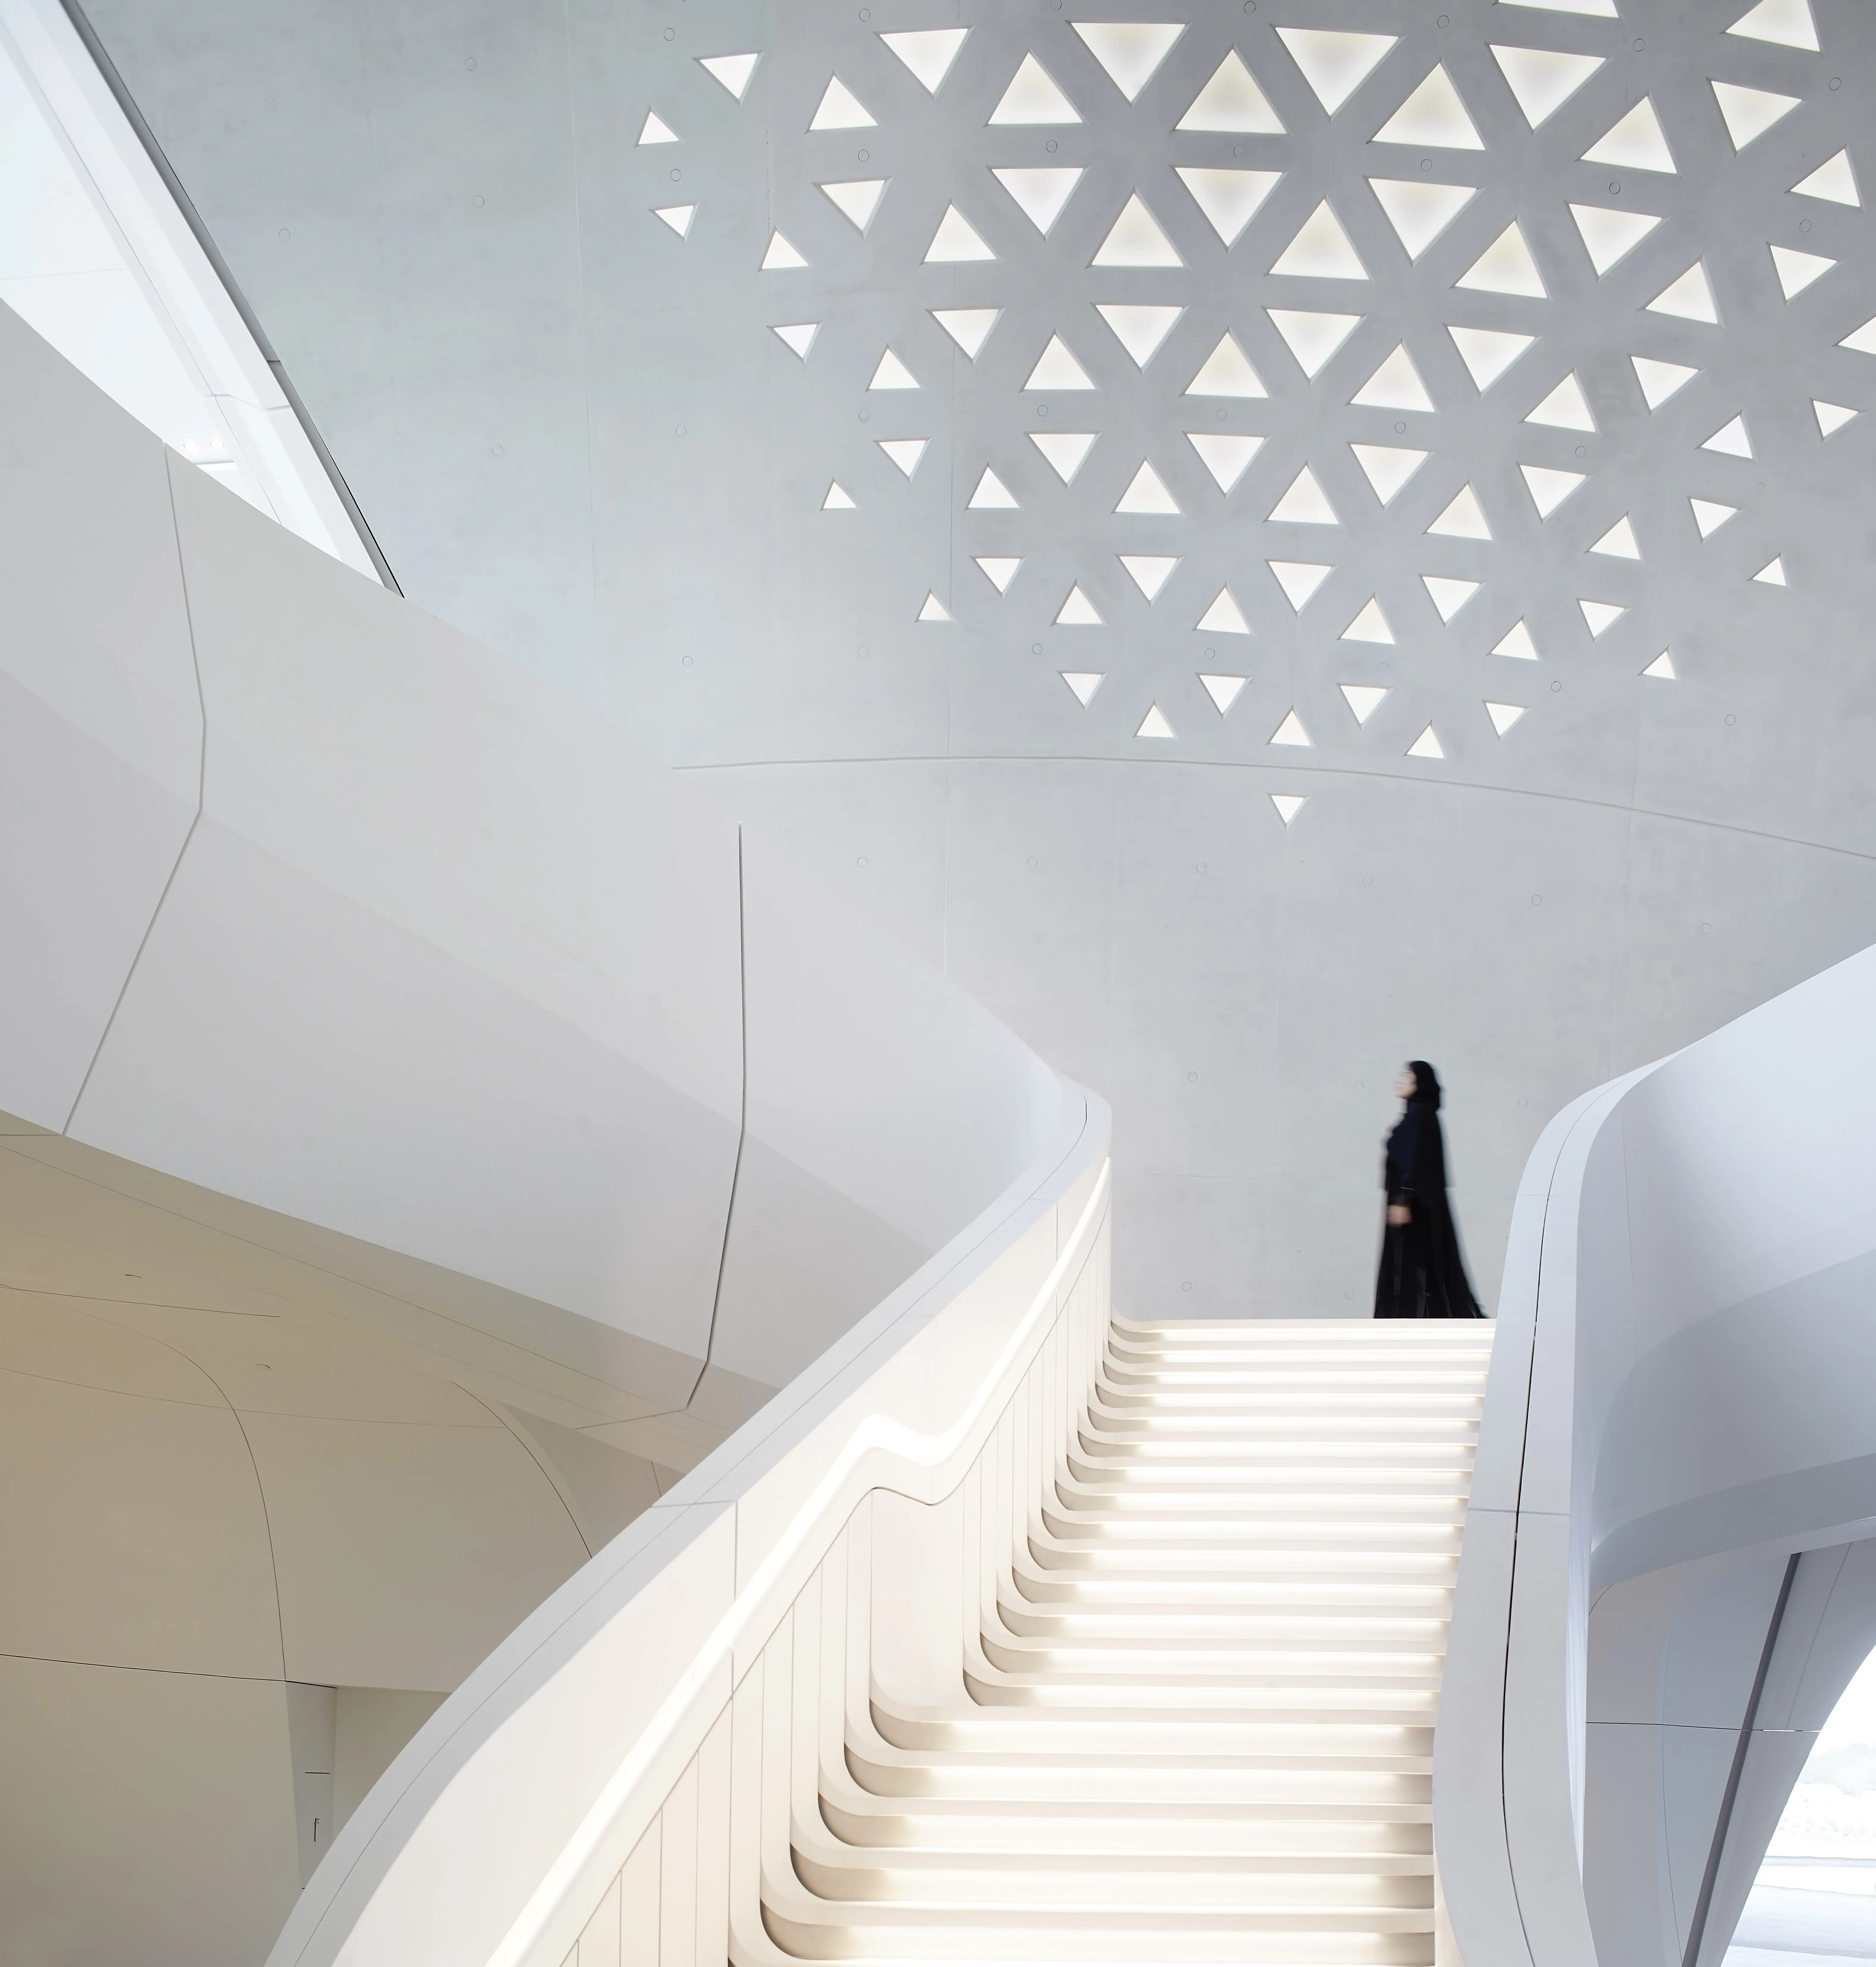 BEEAH HQ Zaha Hadid Architects